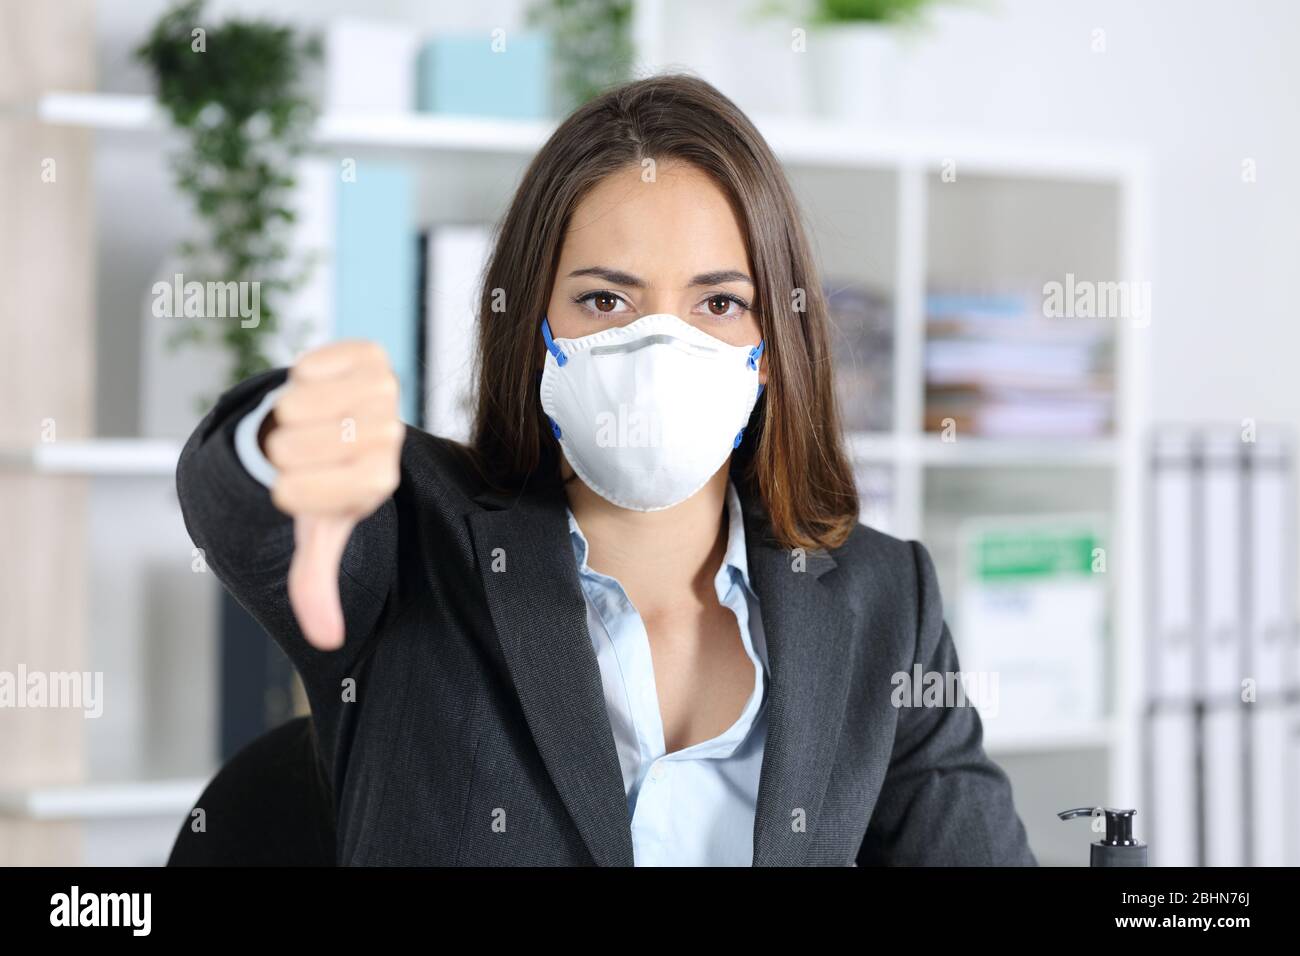 Vorderansicht einer seriösen Exekutivfrau, die eine Schutzmaske trägt und mit den Daumen nach unten zeigt und dabei die Kamera im Büro anschaut Stockfoto